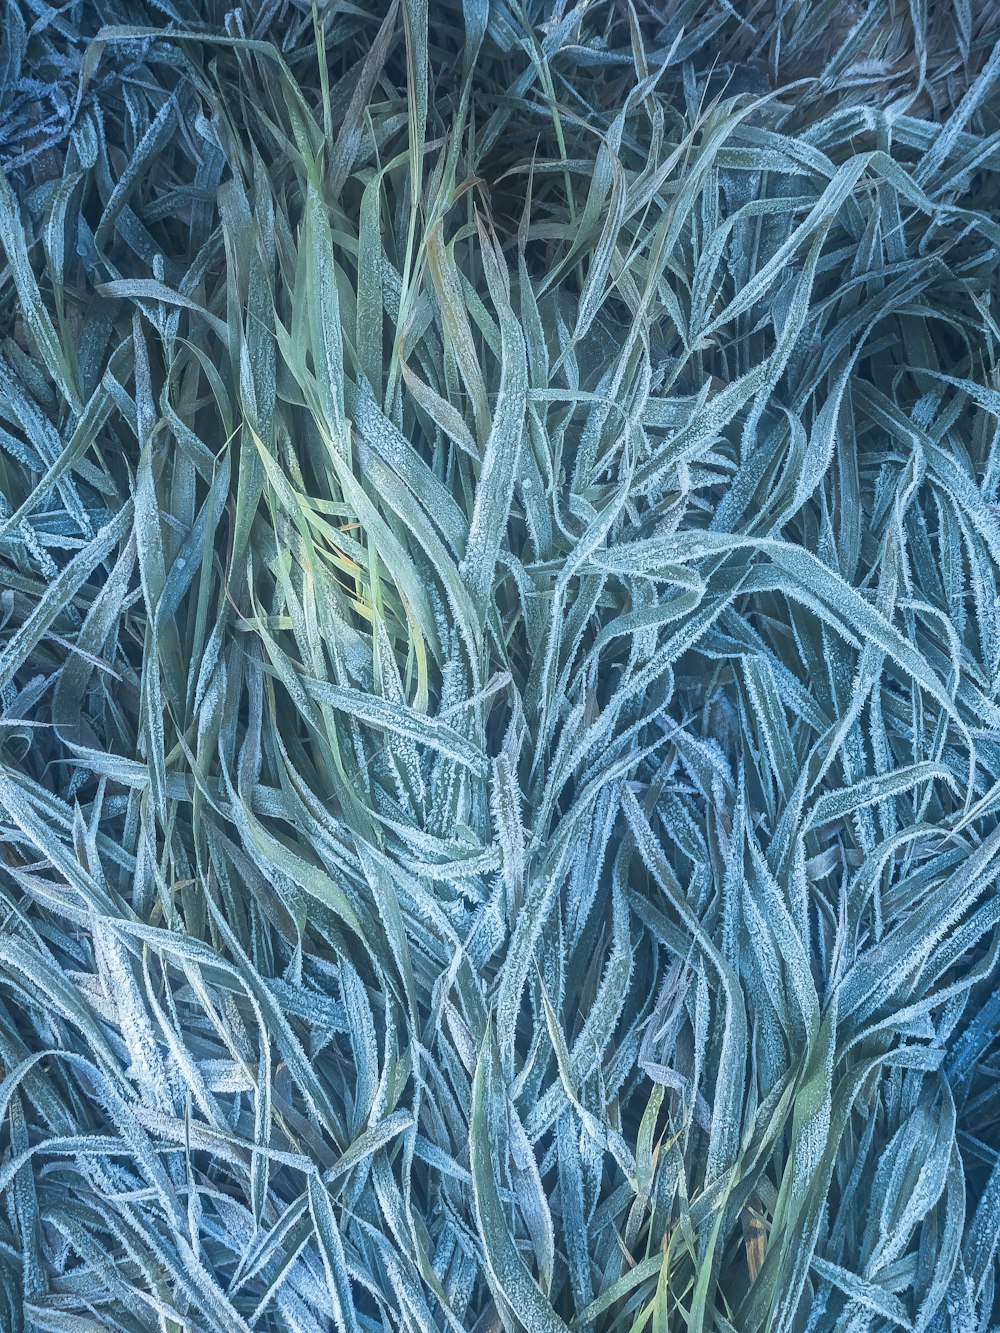 Eine Nahaufnahme von einem Haufen blauem Gras